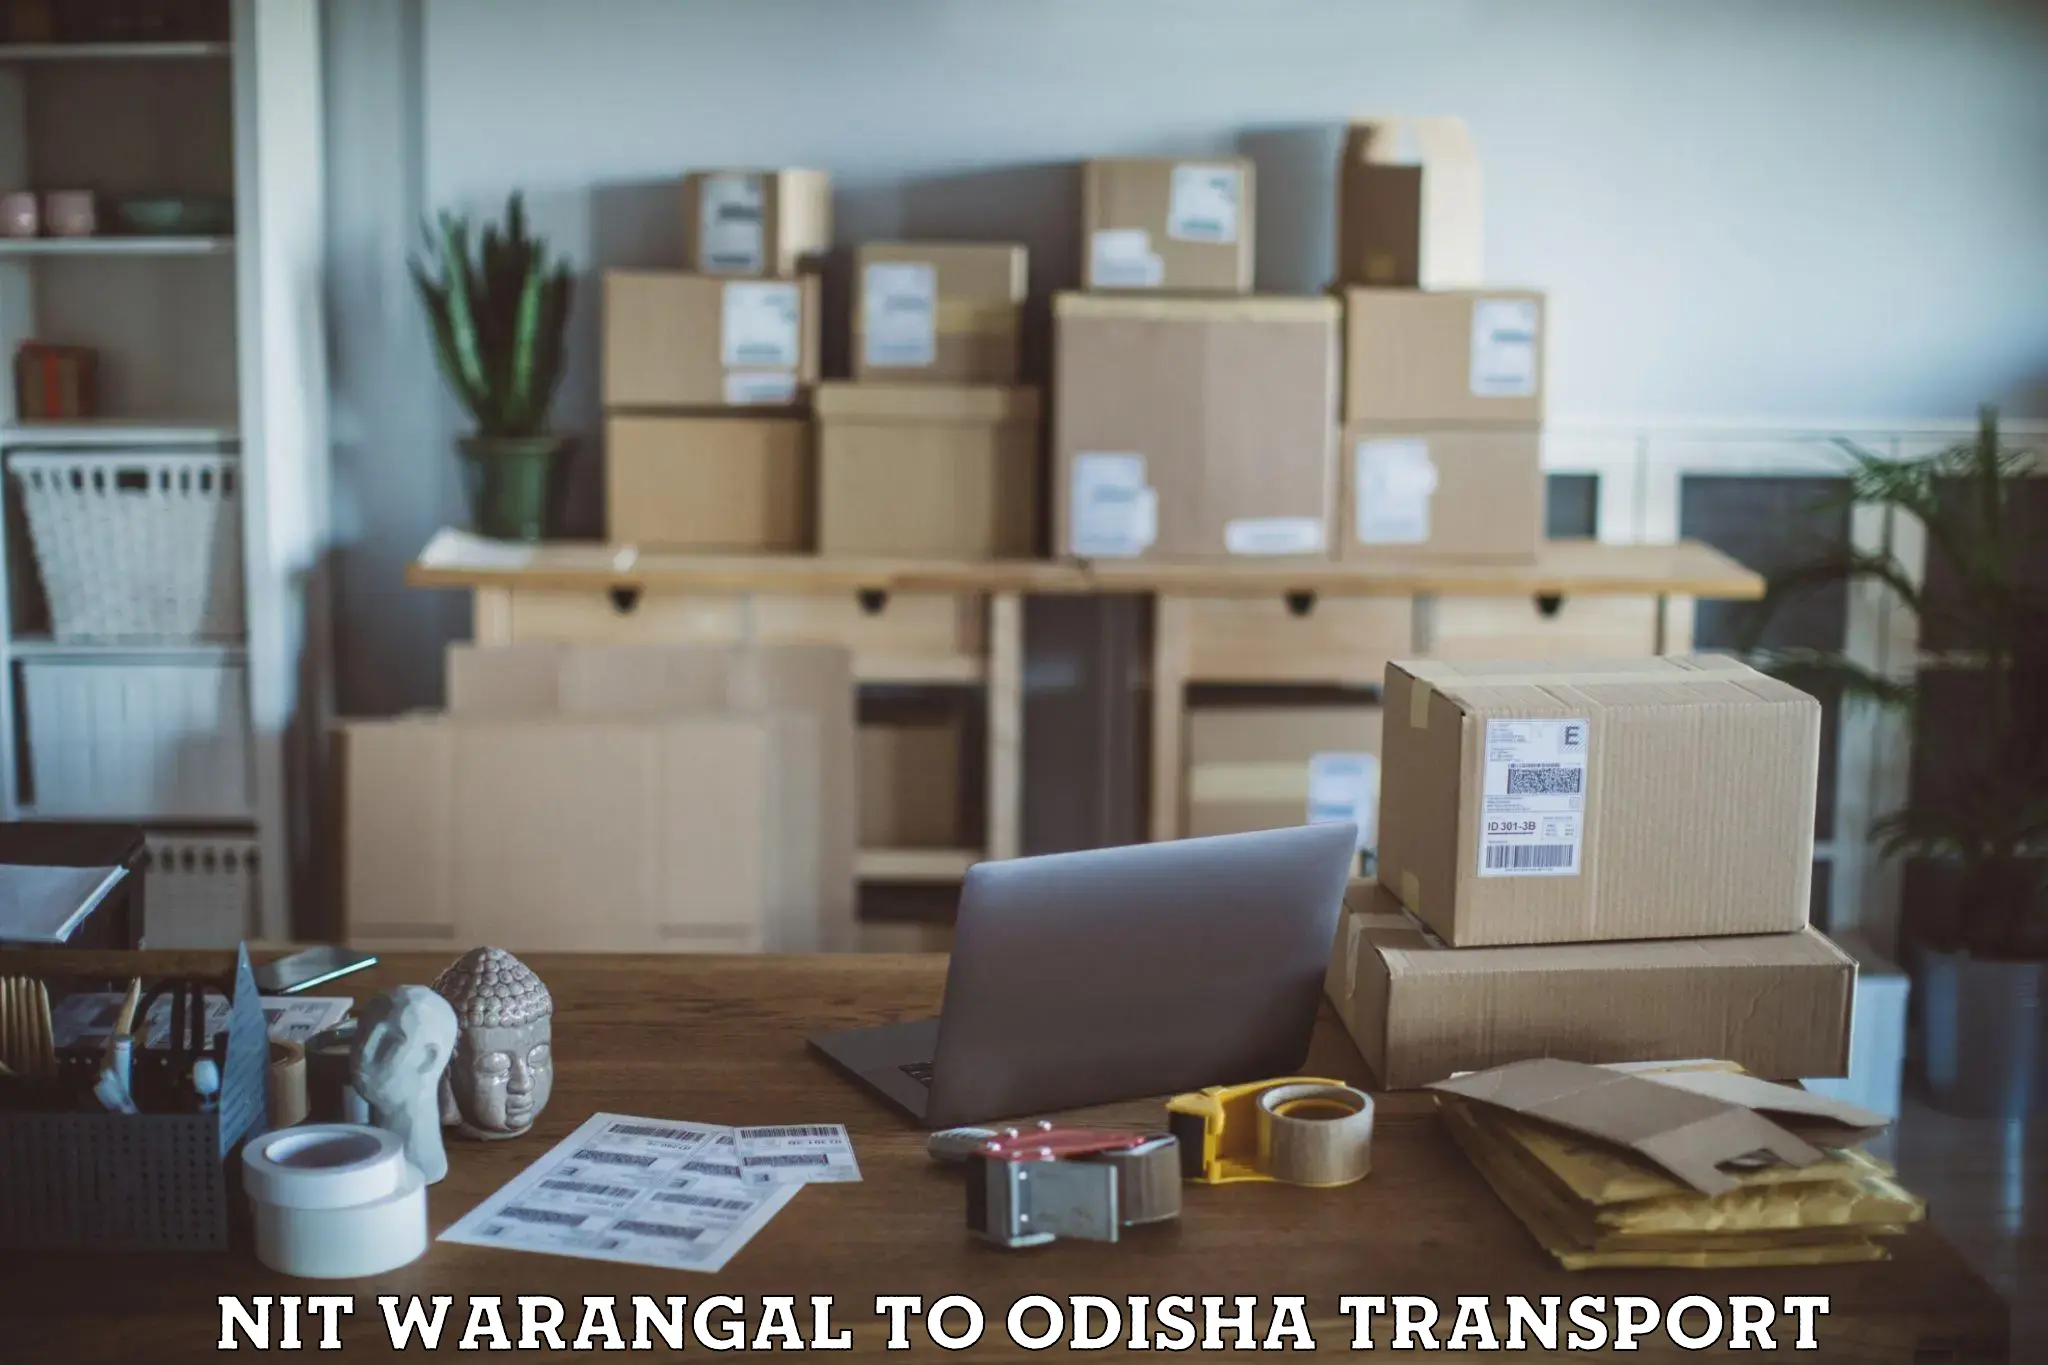 Furniture transport service NIT Warangal to Tihidi